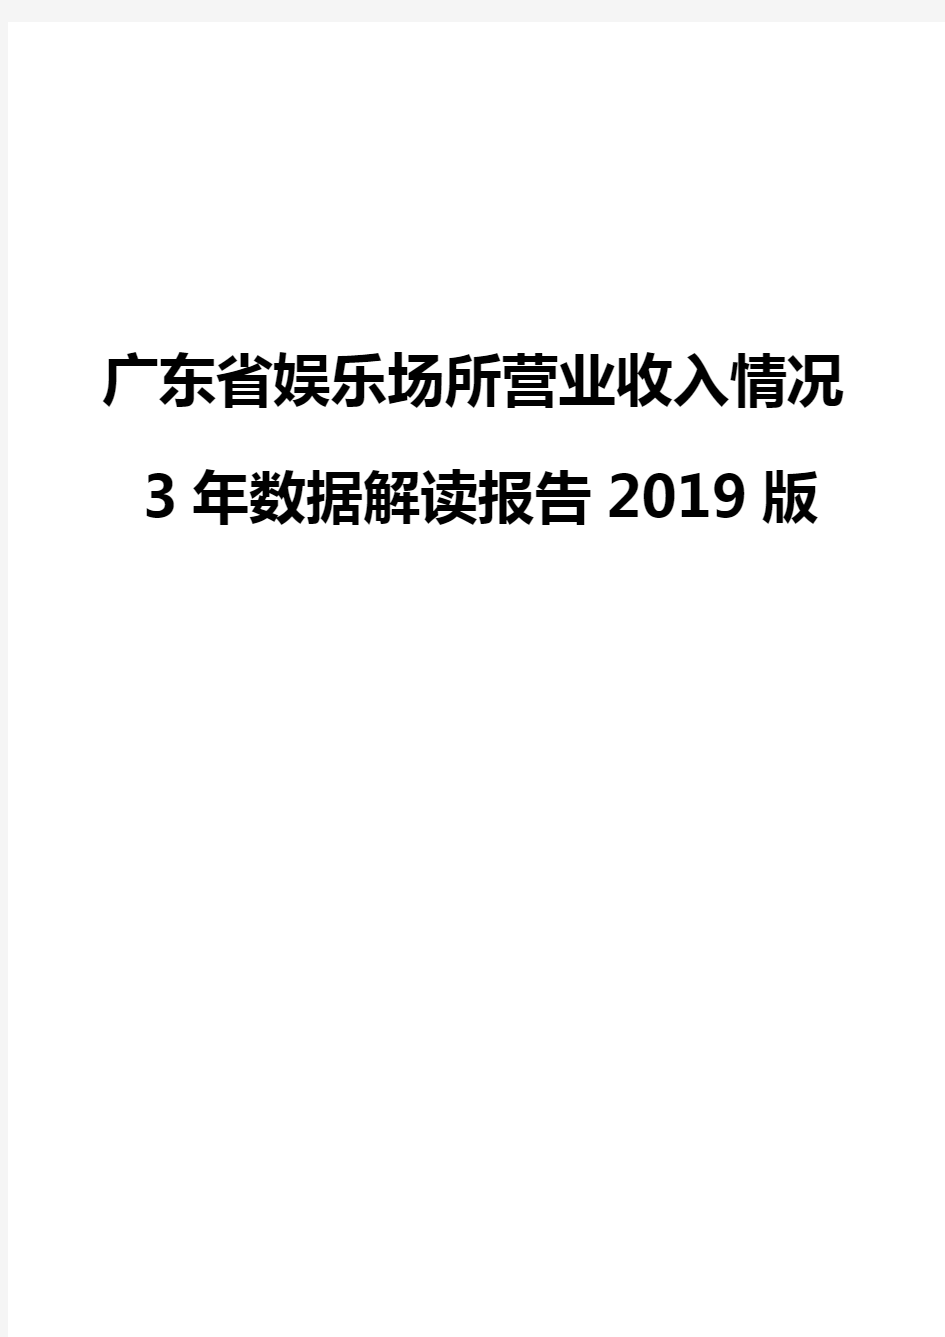 广东省娱乐场所营业收入情况3年数据解读报告2019版